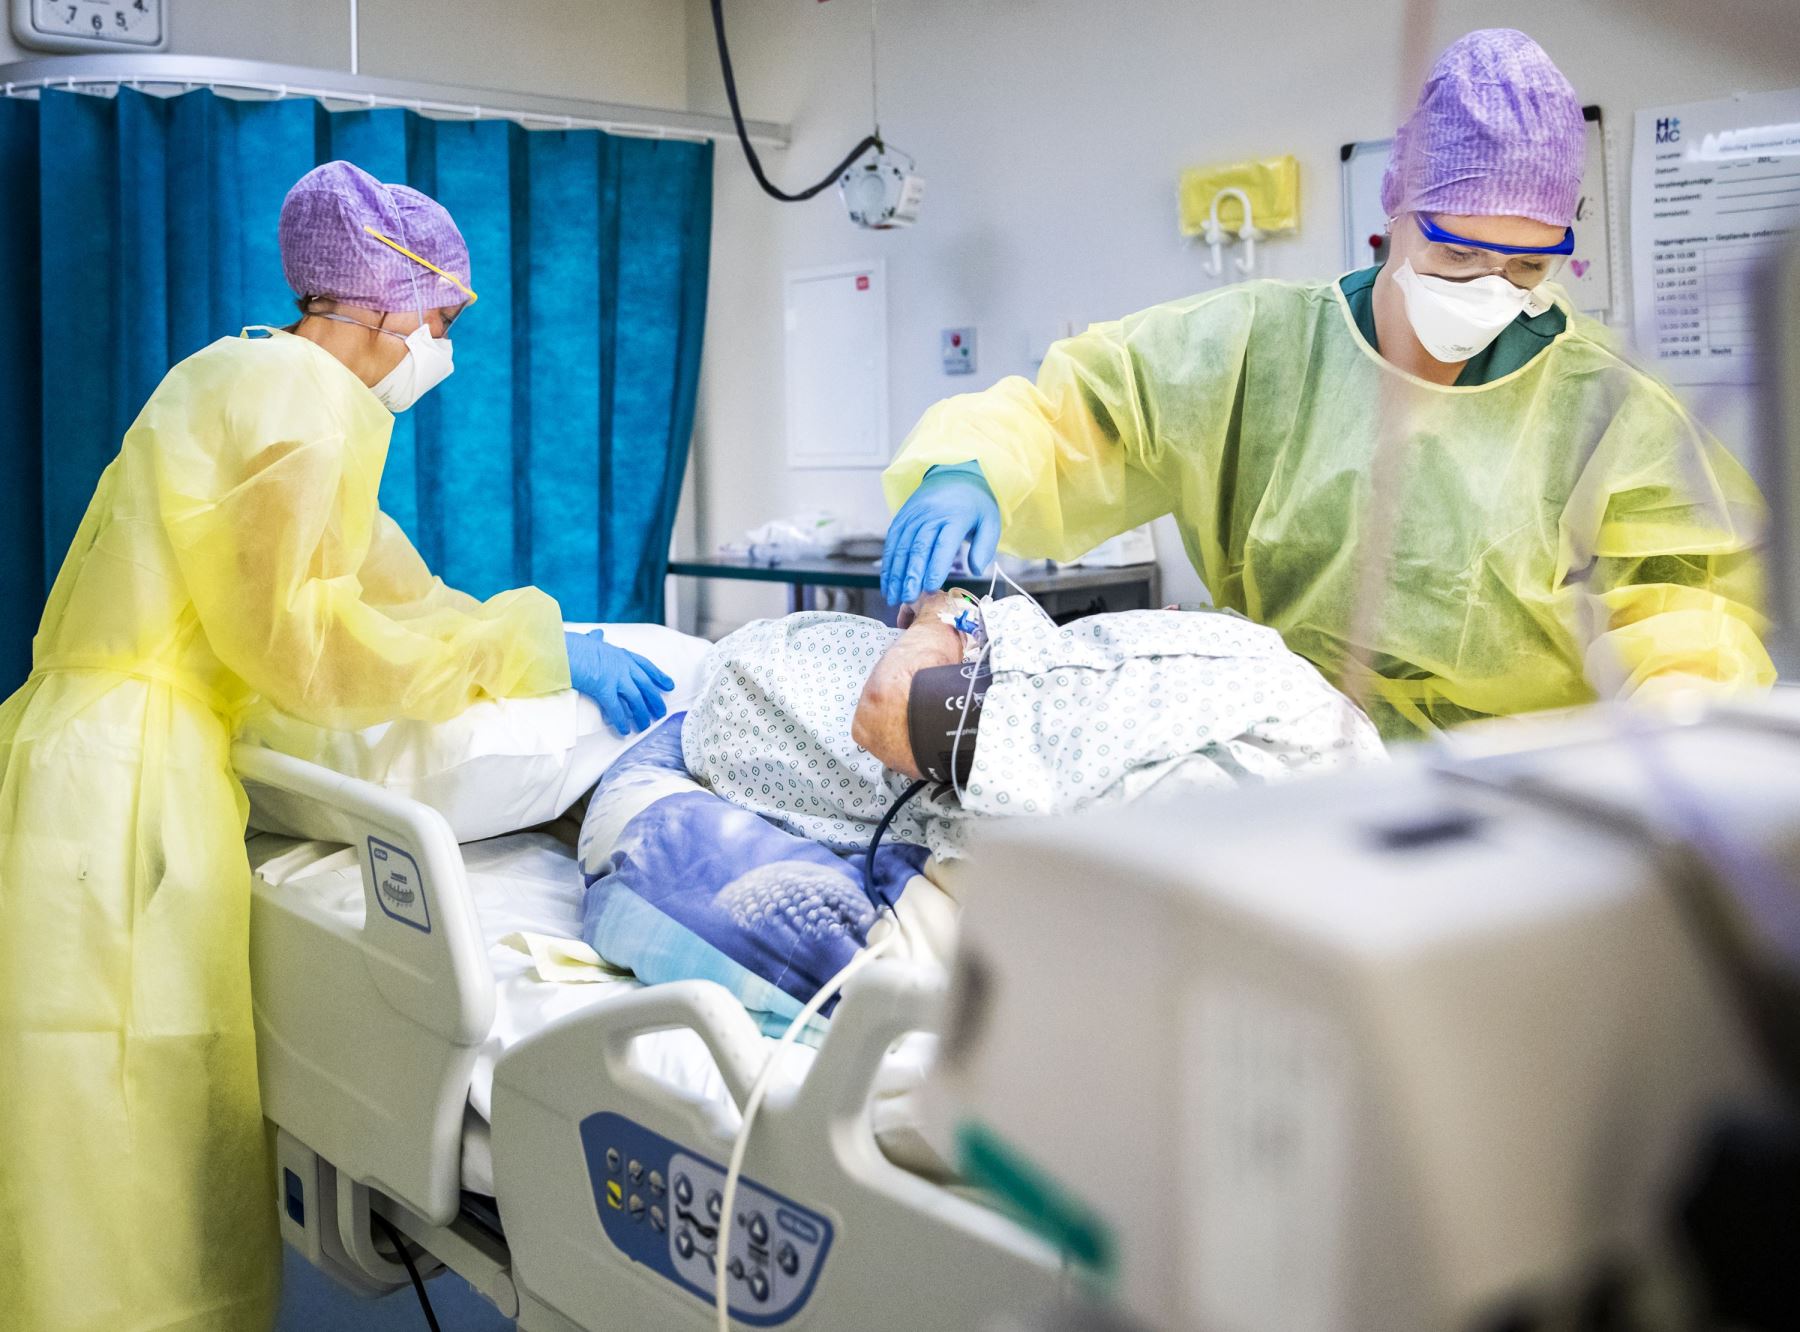 El personal médico atiende a un paciente en la unidad de cuidados intensivos (UCI) del hospital HMC Westeinde en La Haya, Países Bajos, durante la pandemia del covid-19. Foto: AFP.